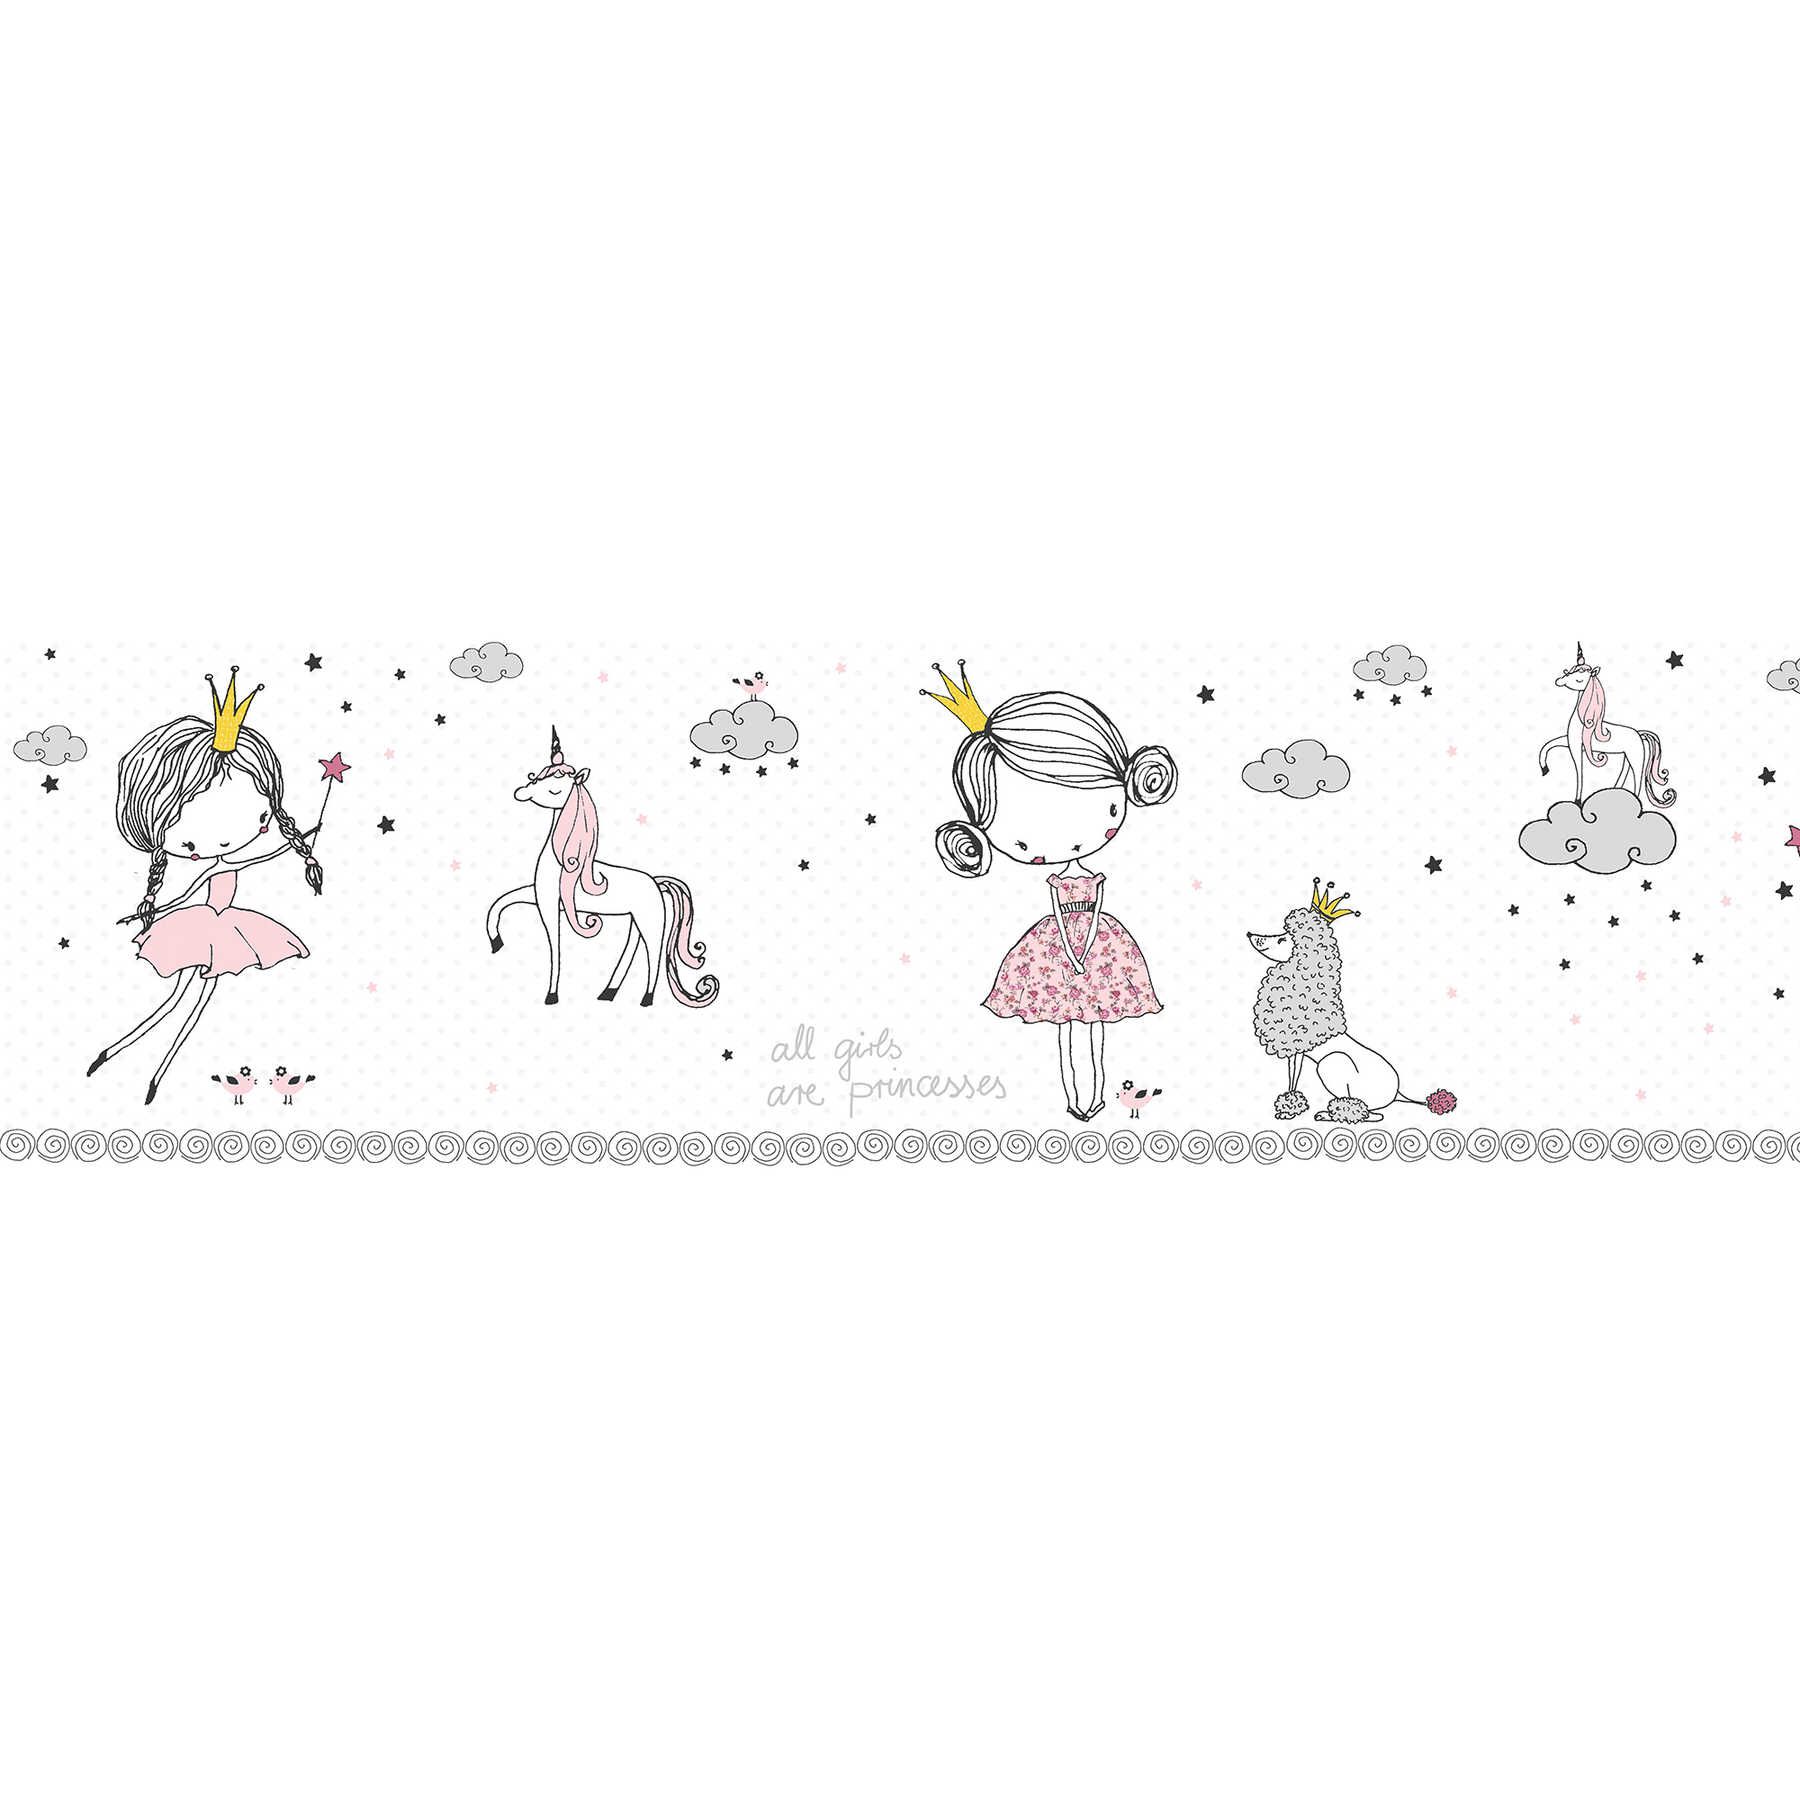         Bordo autoadesivo per bambine "Princess dream" - rosa, grigio, giallo
    